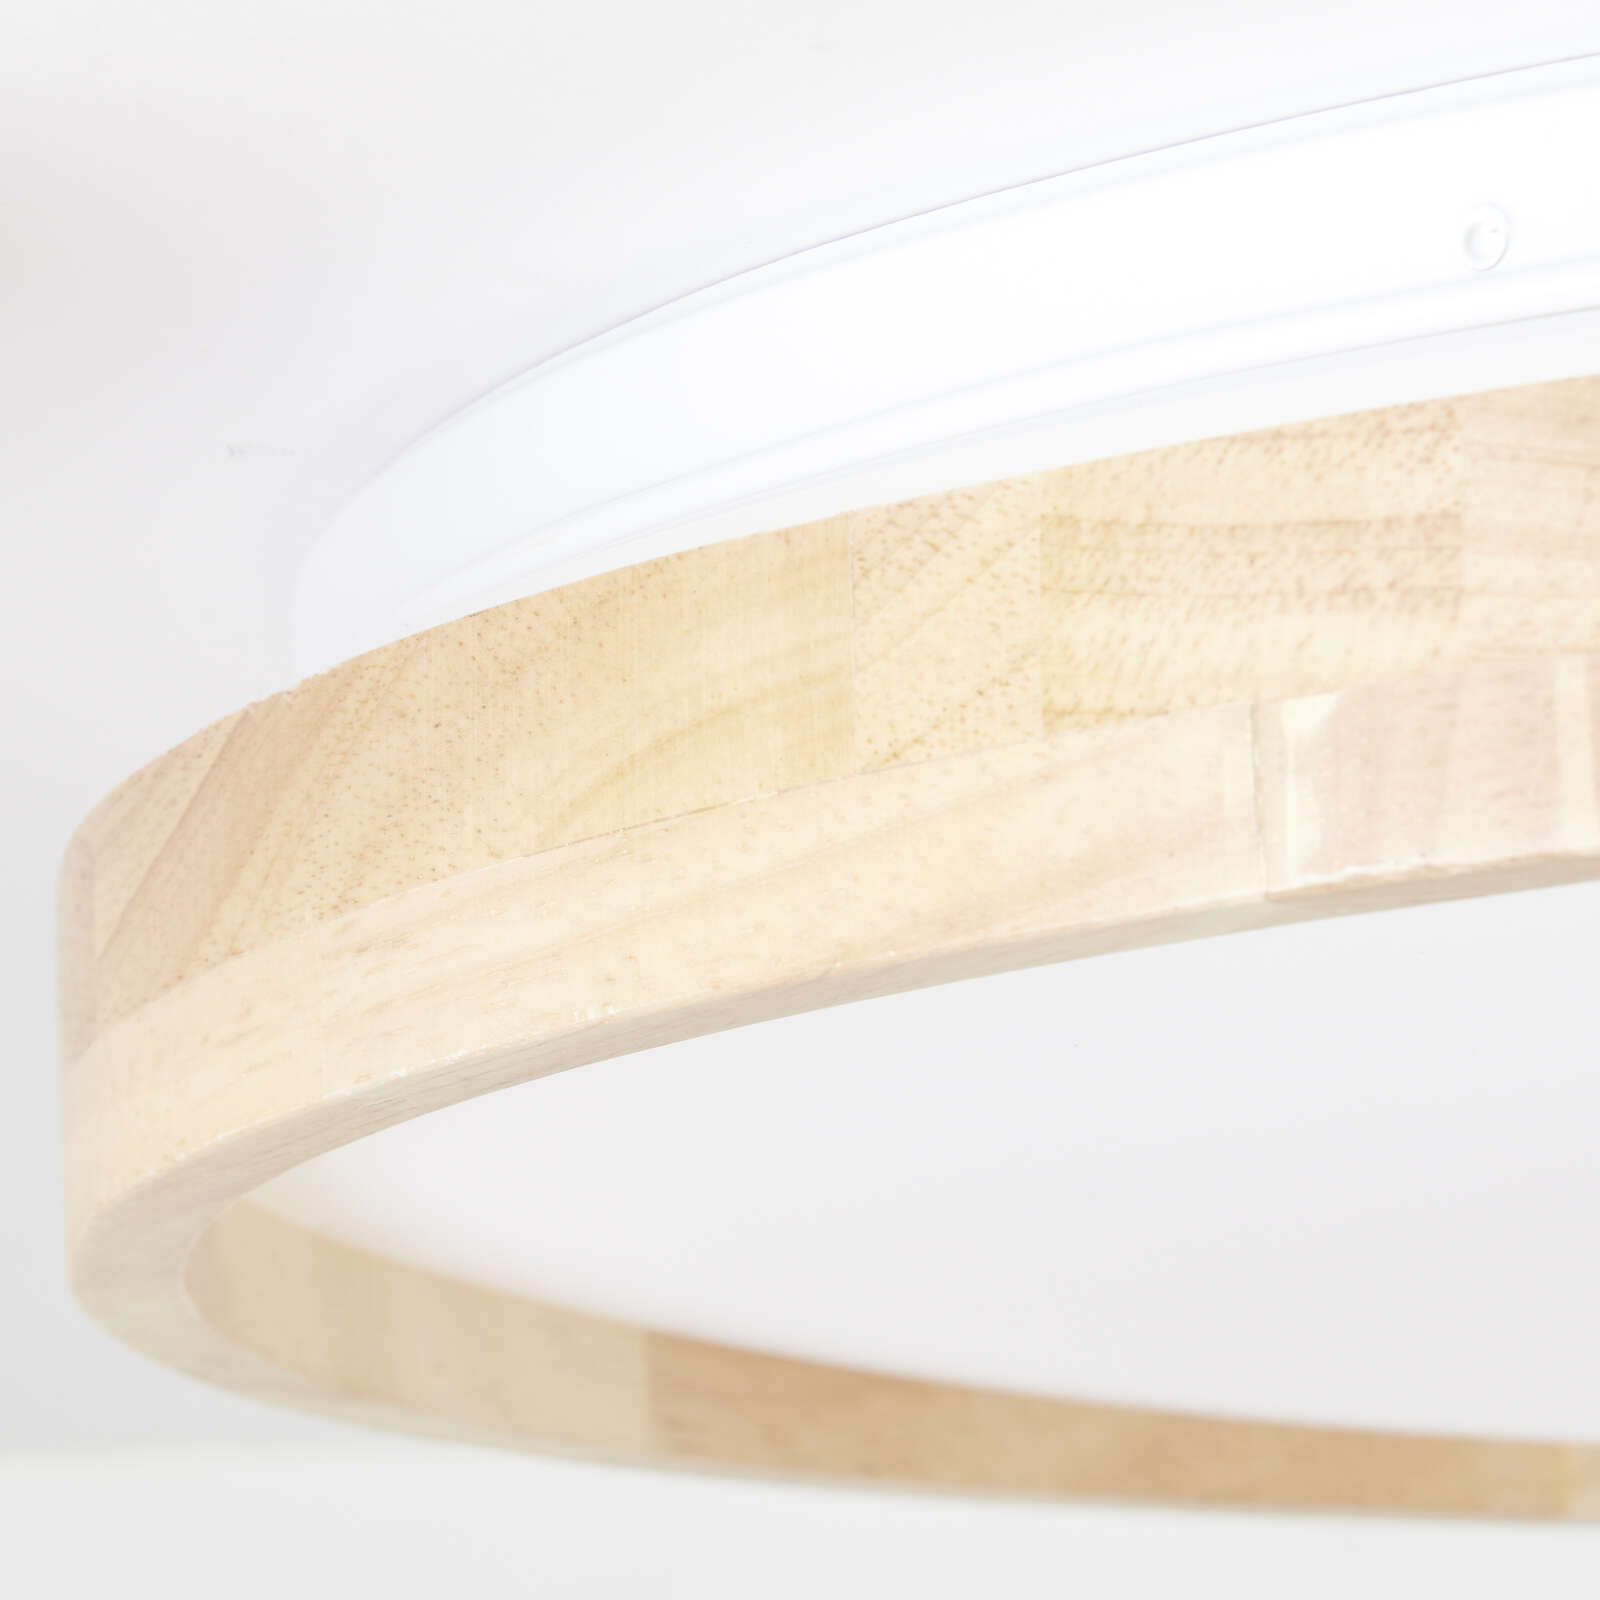             Wooden ceiling light - Alea 2 - Beige
        